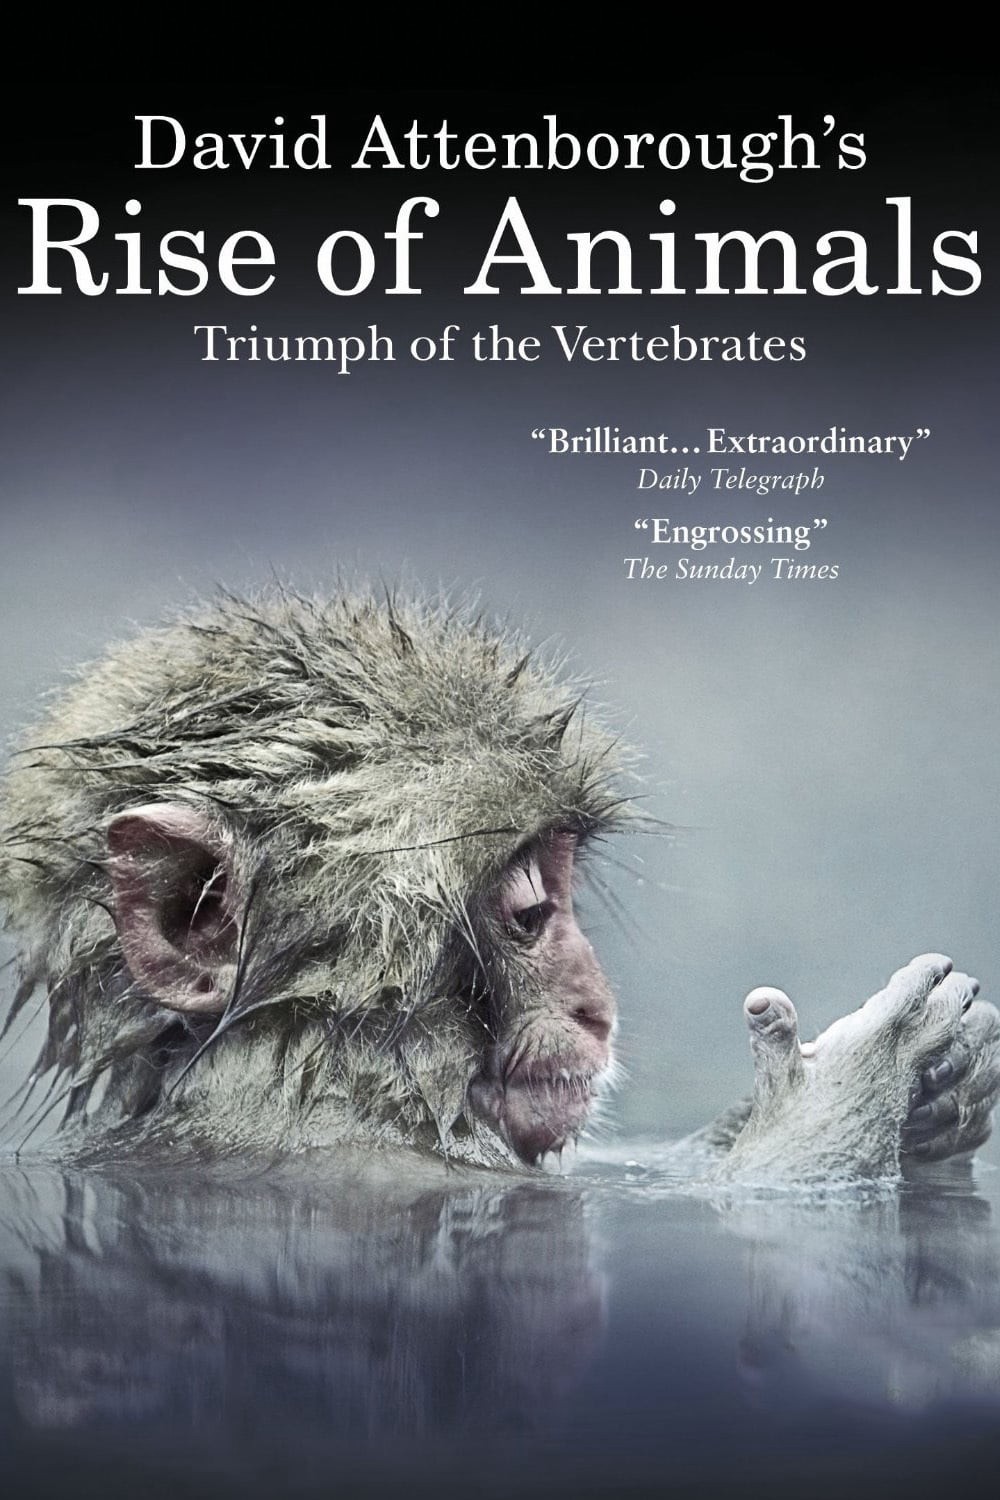 David Attenborough's Rise of Animals: Triumph of the Vertebrates | David Attenborough's Rise of Animals: Triumph of the Vertebrates (2013)